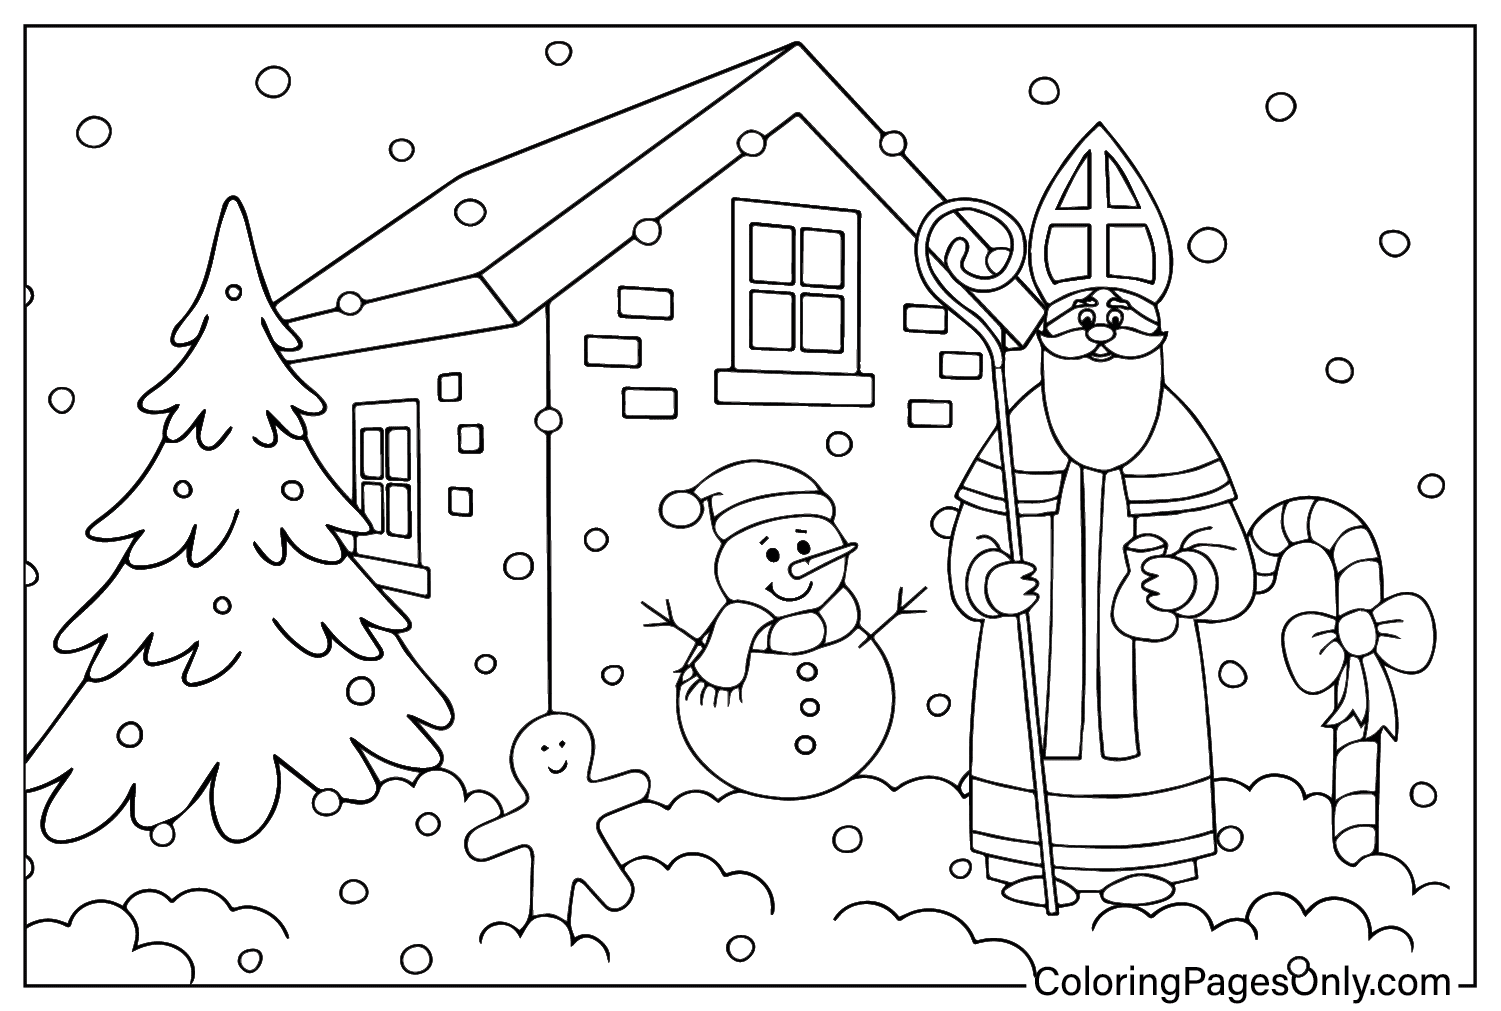 Pagina da colorare di San Nicola e il pupazzo di neve dal giorno di San Nicola